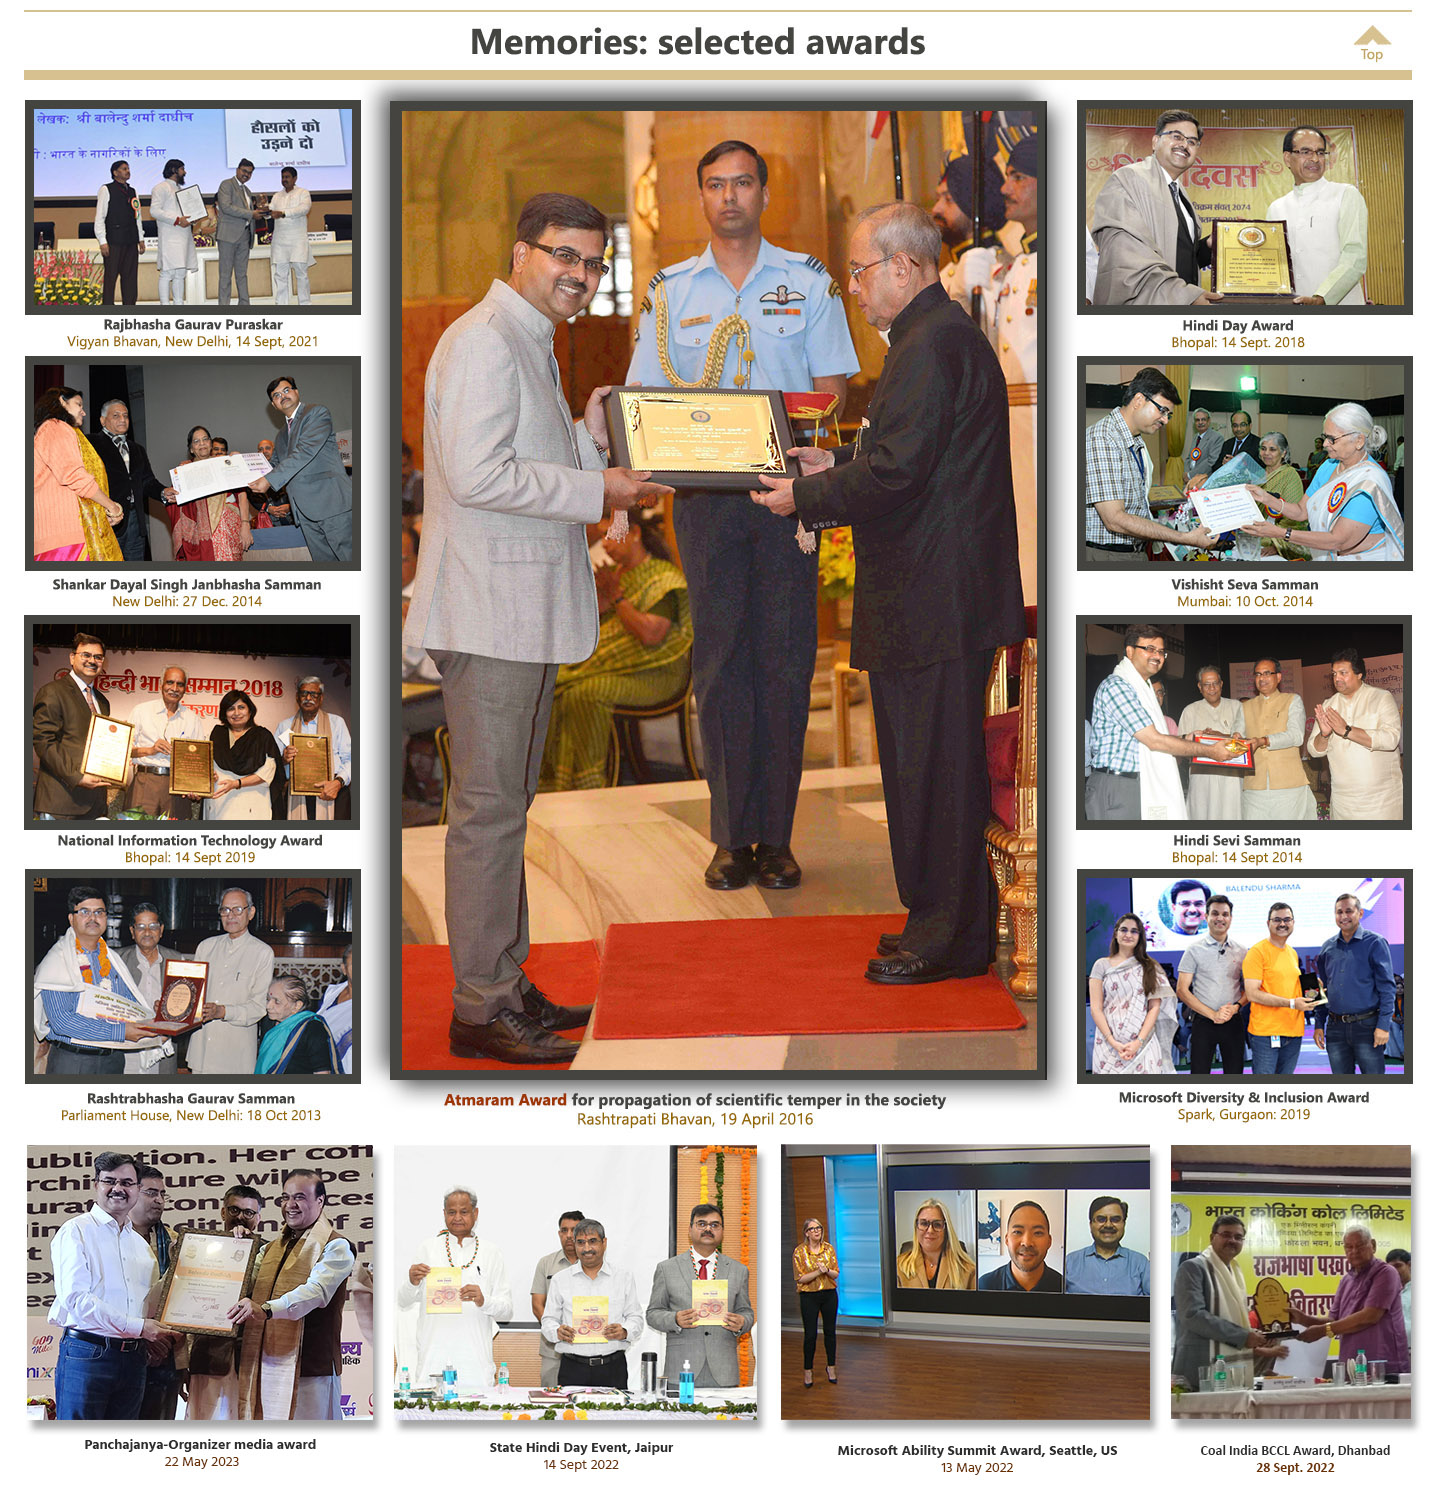 Some awards received by Balendu Sharma Dadhich बालेन्दु शर्मा दाधीच को प्राप्त हुए कुछ पुरस्कारों की झलकियाँ